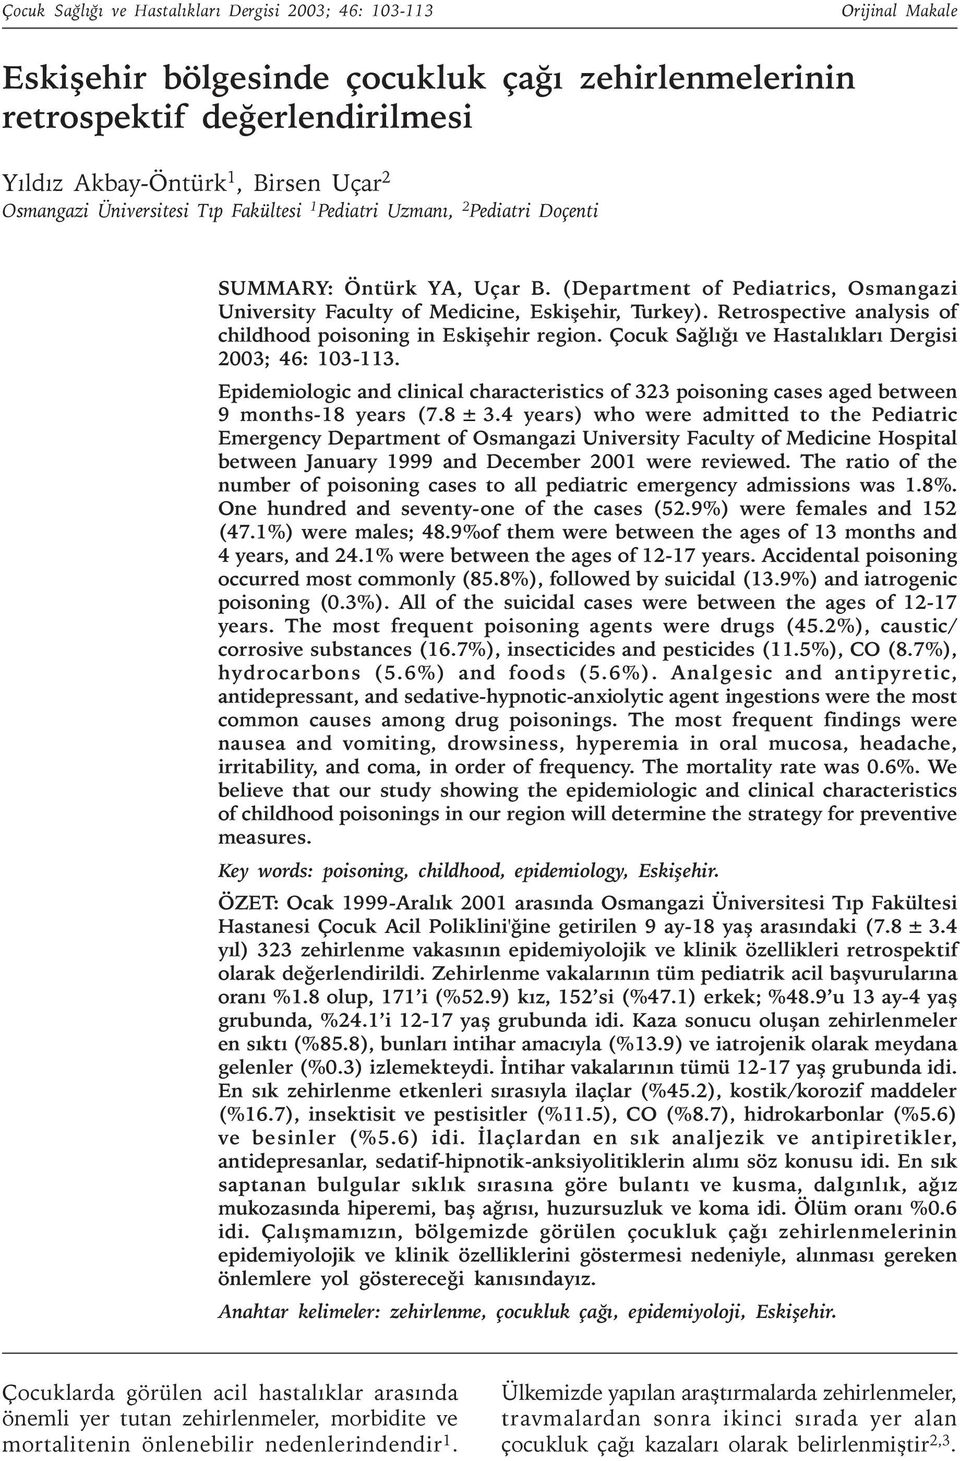 Retrospective analysis of childhood poisoning in Eskiþehir region. Çocuk Saðlýðý ve Hastalýklarý Dergisi 2003; 46: 103-113.